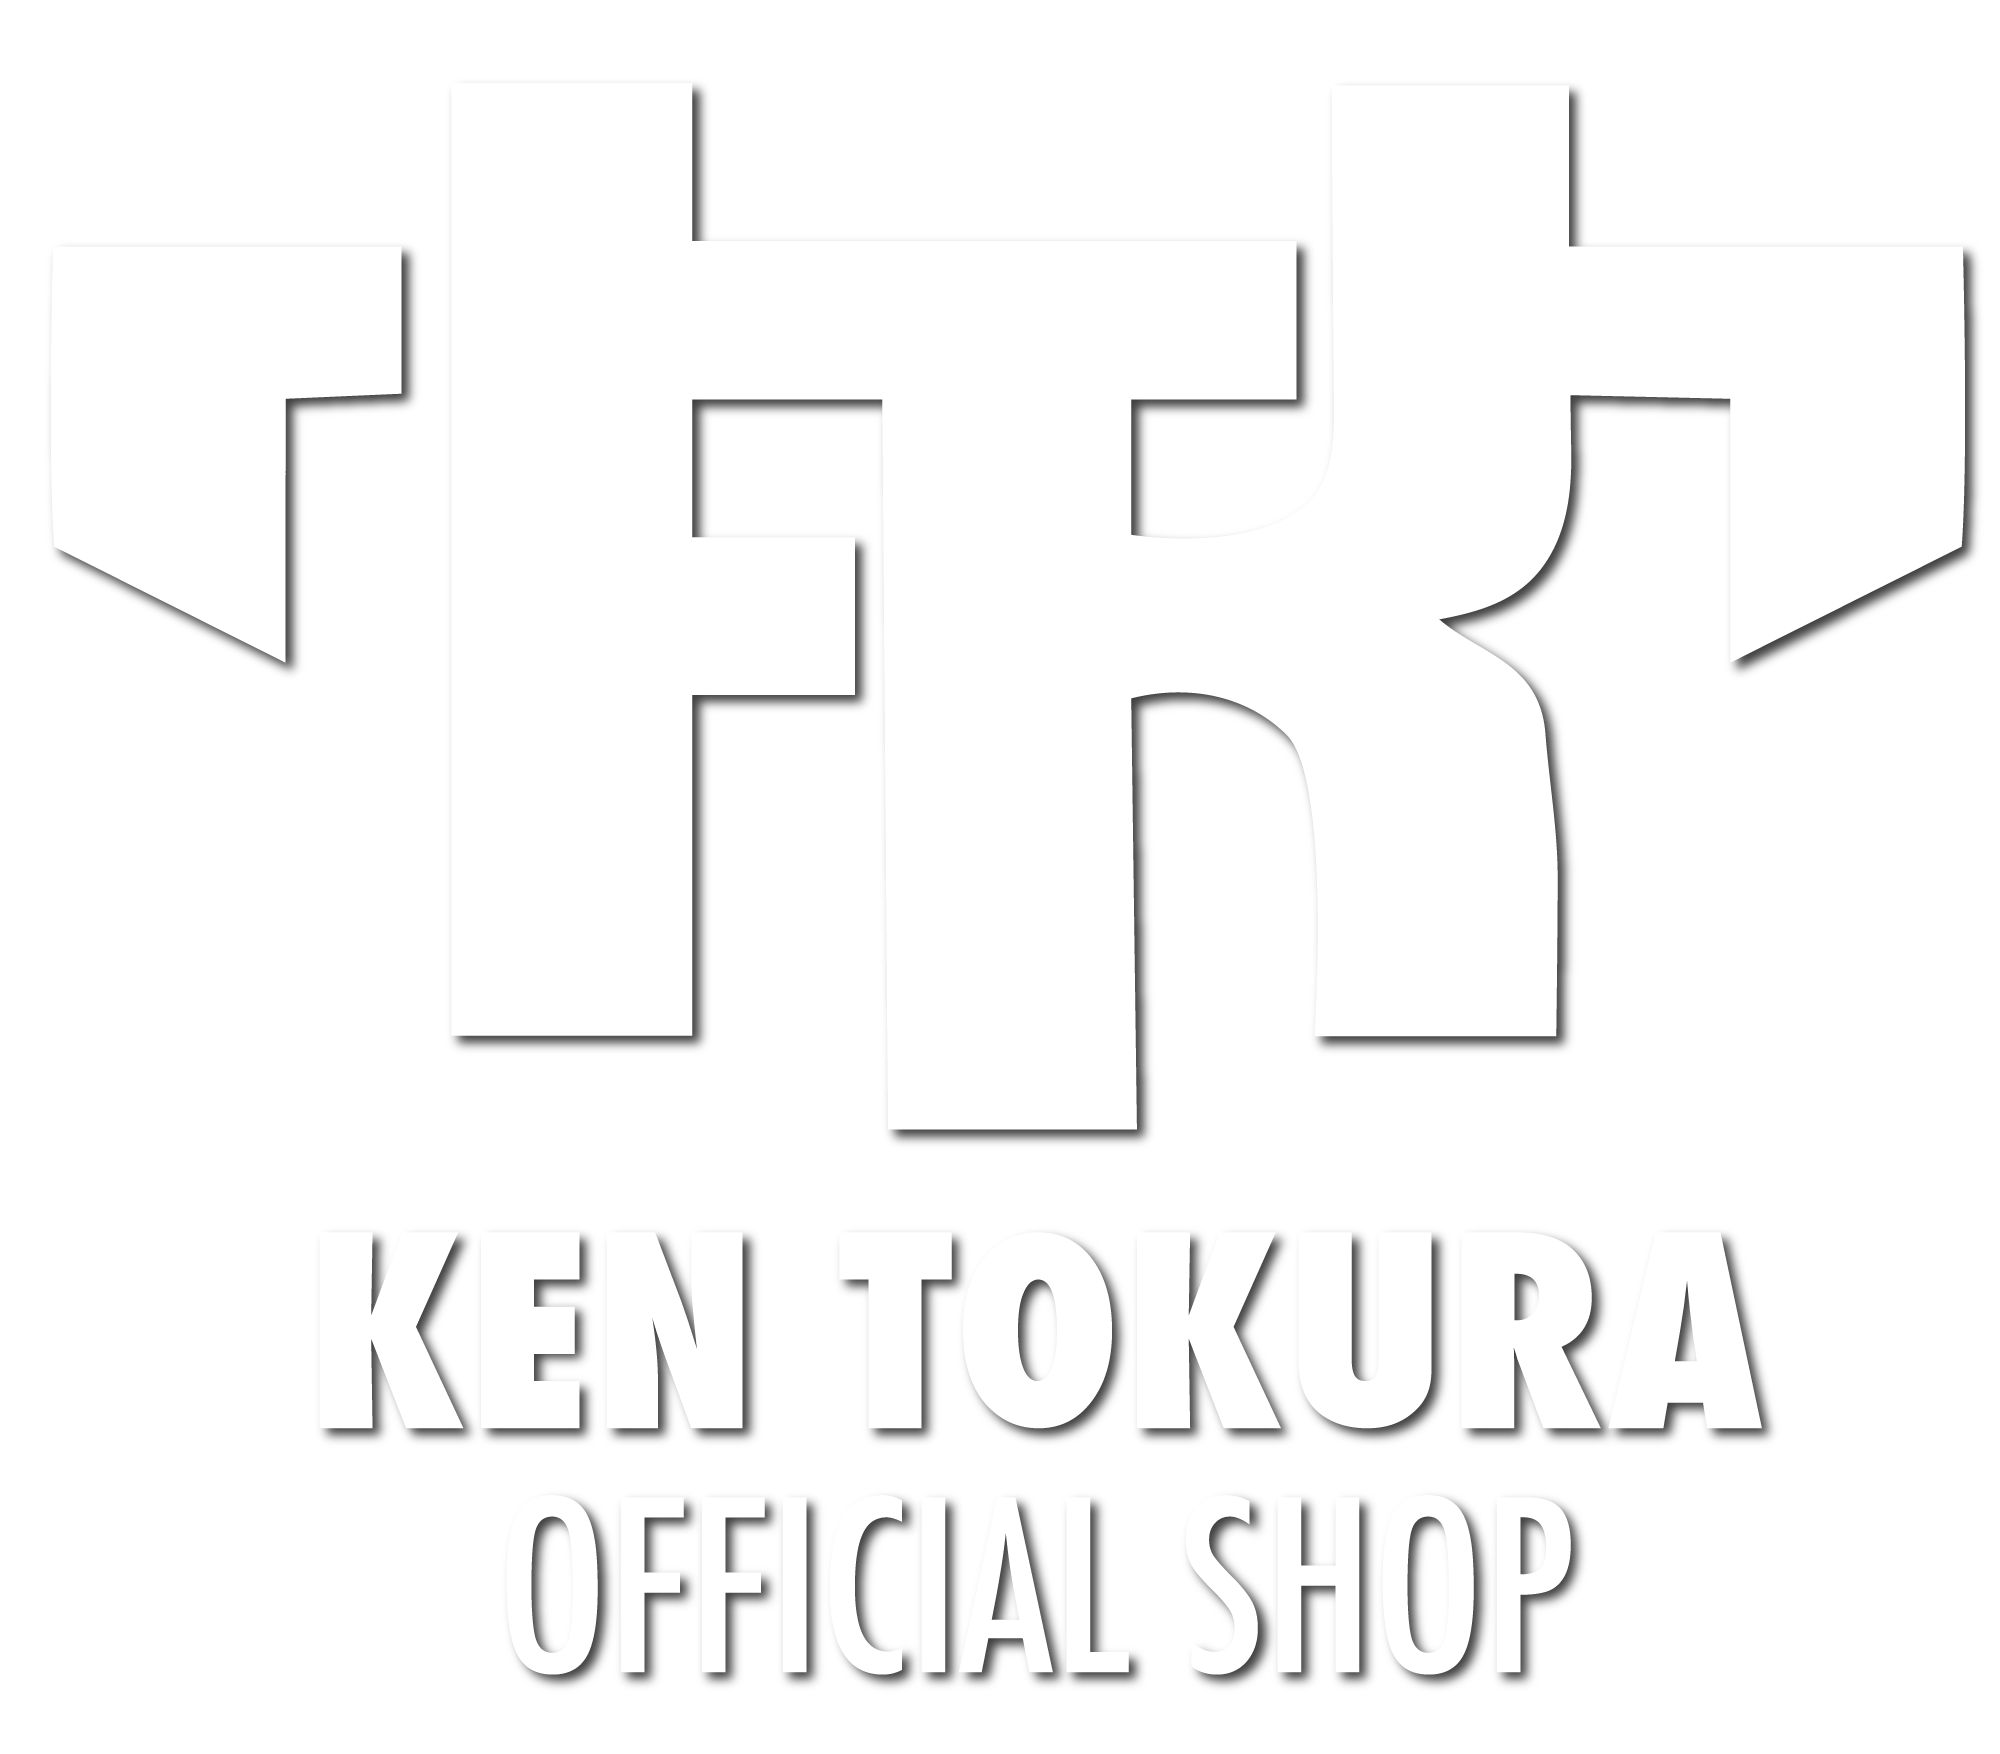 Ken Tokura Official Shop